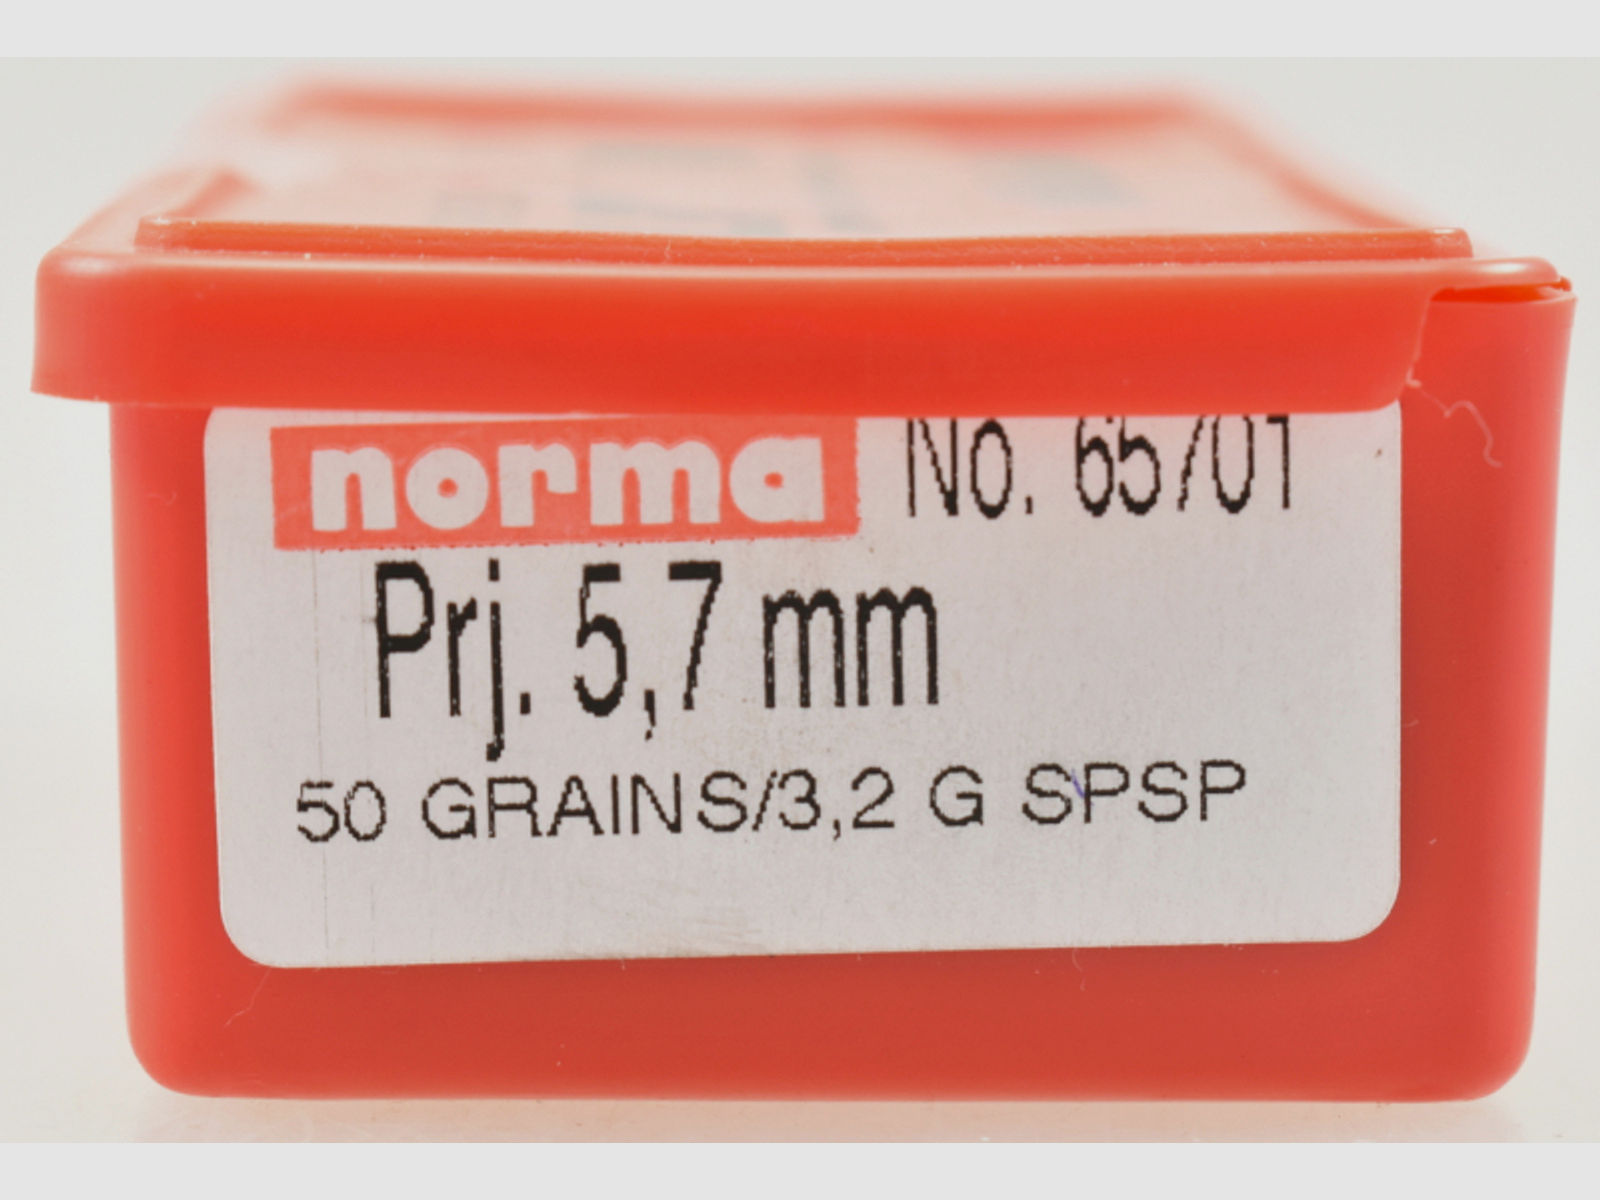 100 Norma Geschosse .224 - 50gr. SPSP # 65701